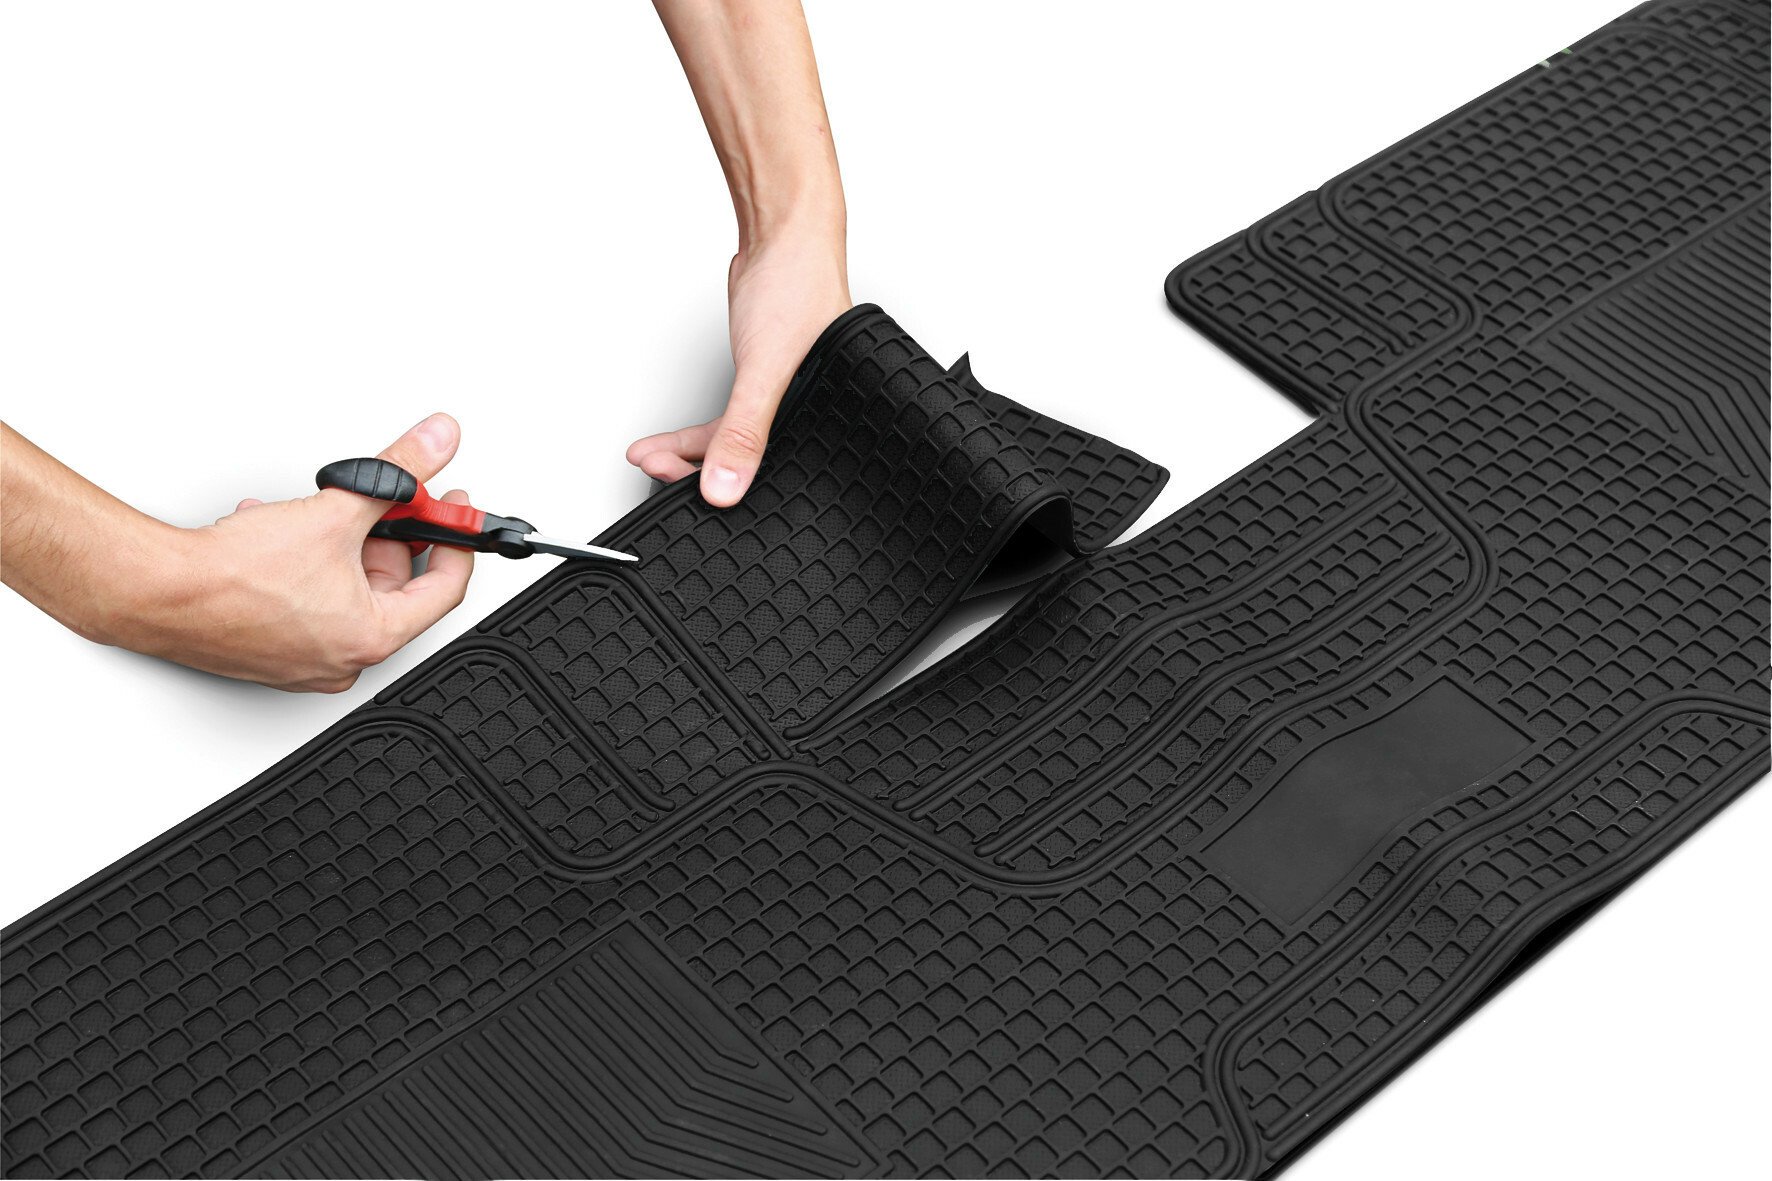 Maxi univerzális hátsó PVC szőnyeg 141x41cm 1db thumb